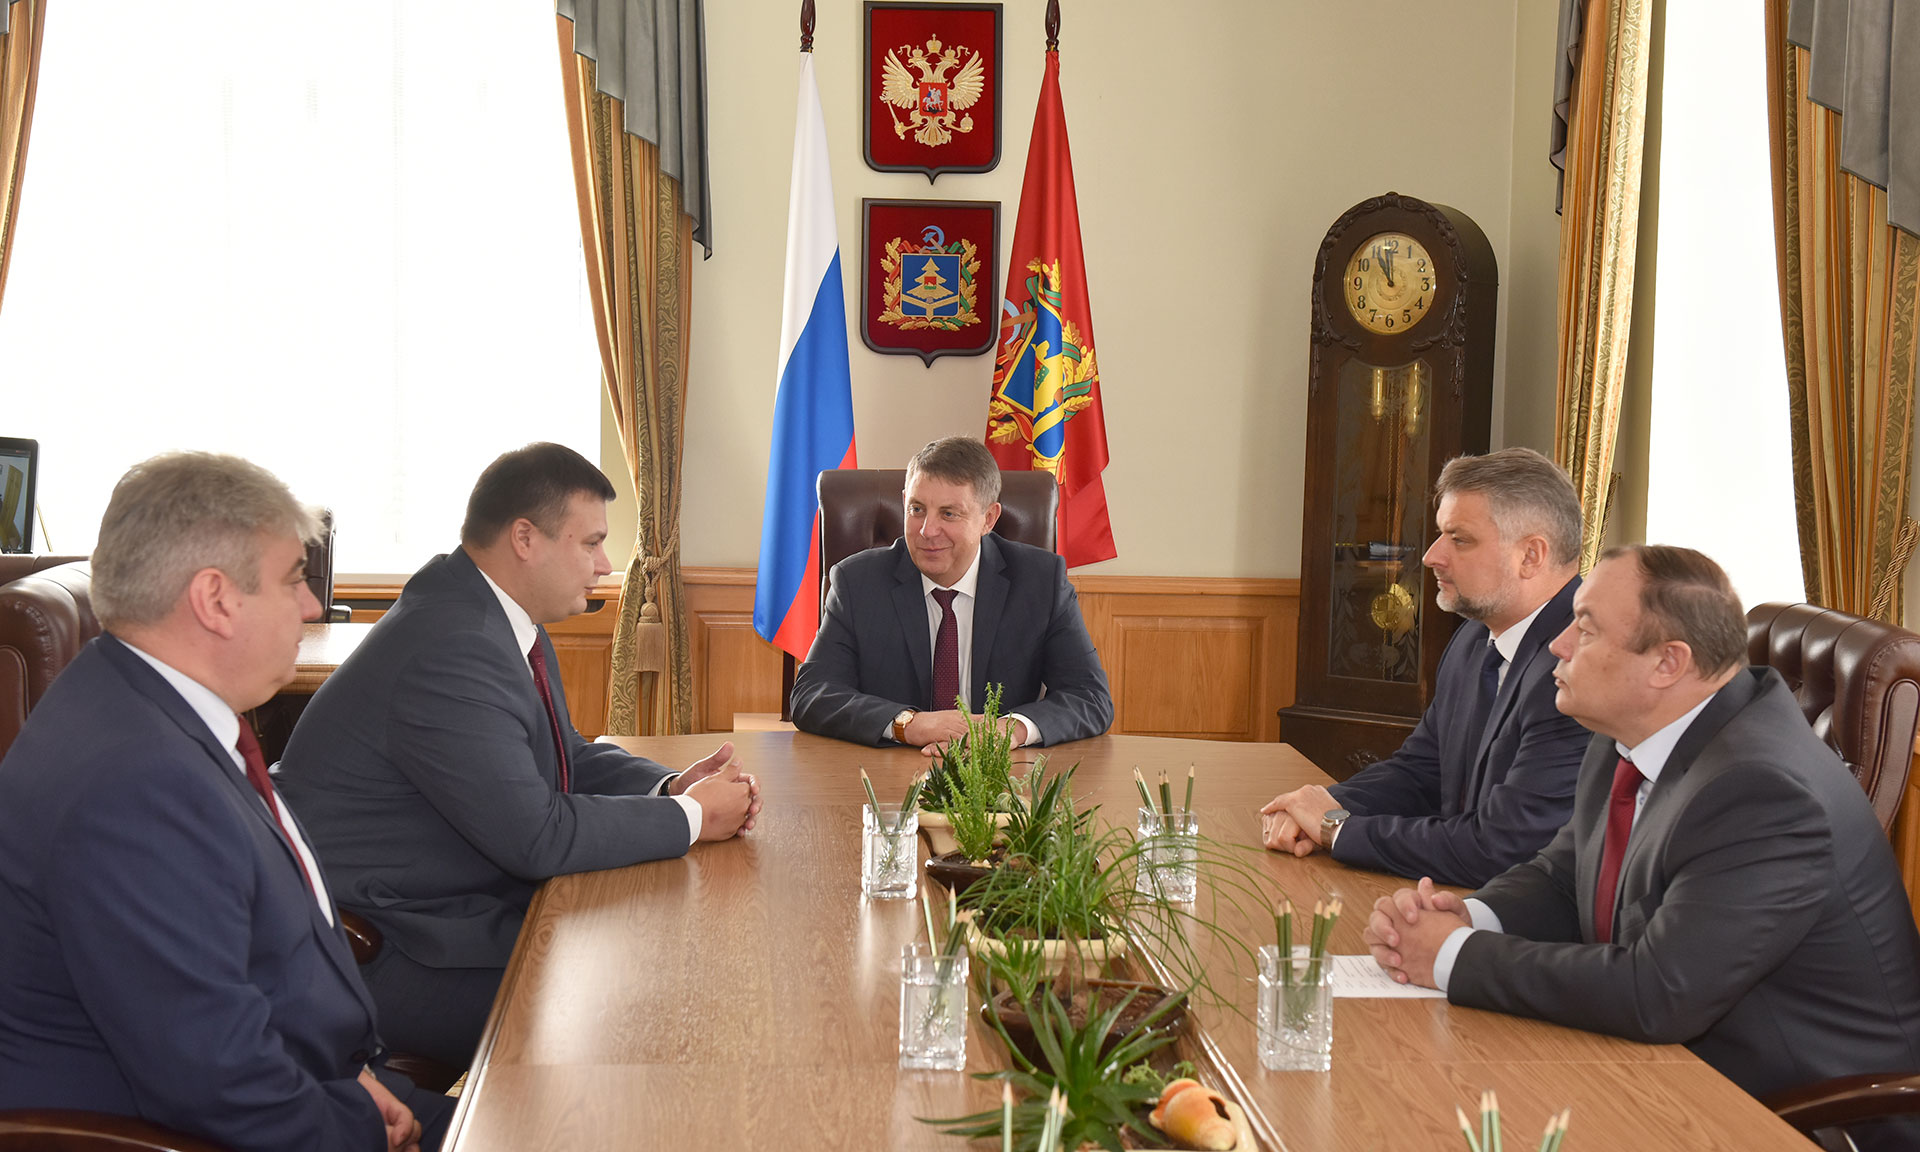 Брянский губернатор встретился с новым руководителем следственного управления региона Максимом Лукичевым